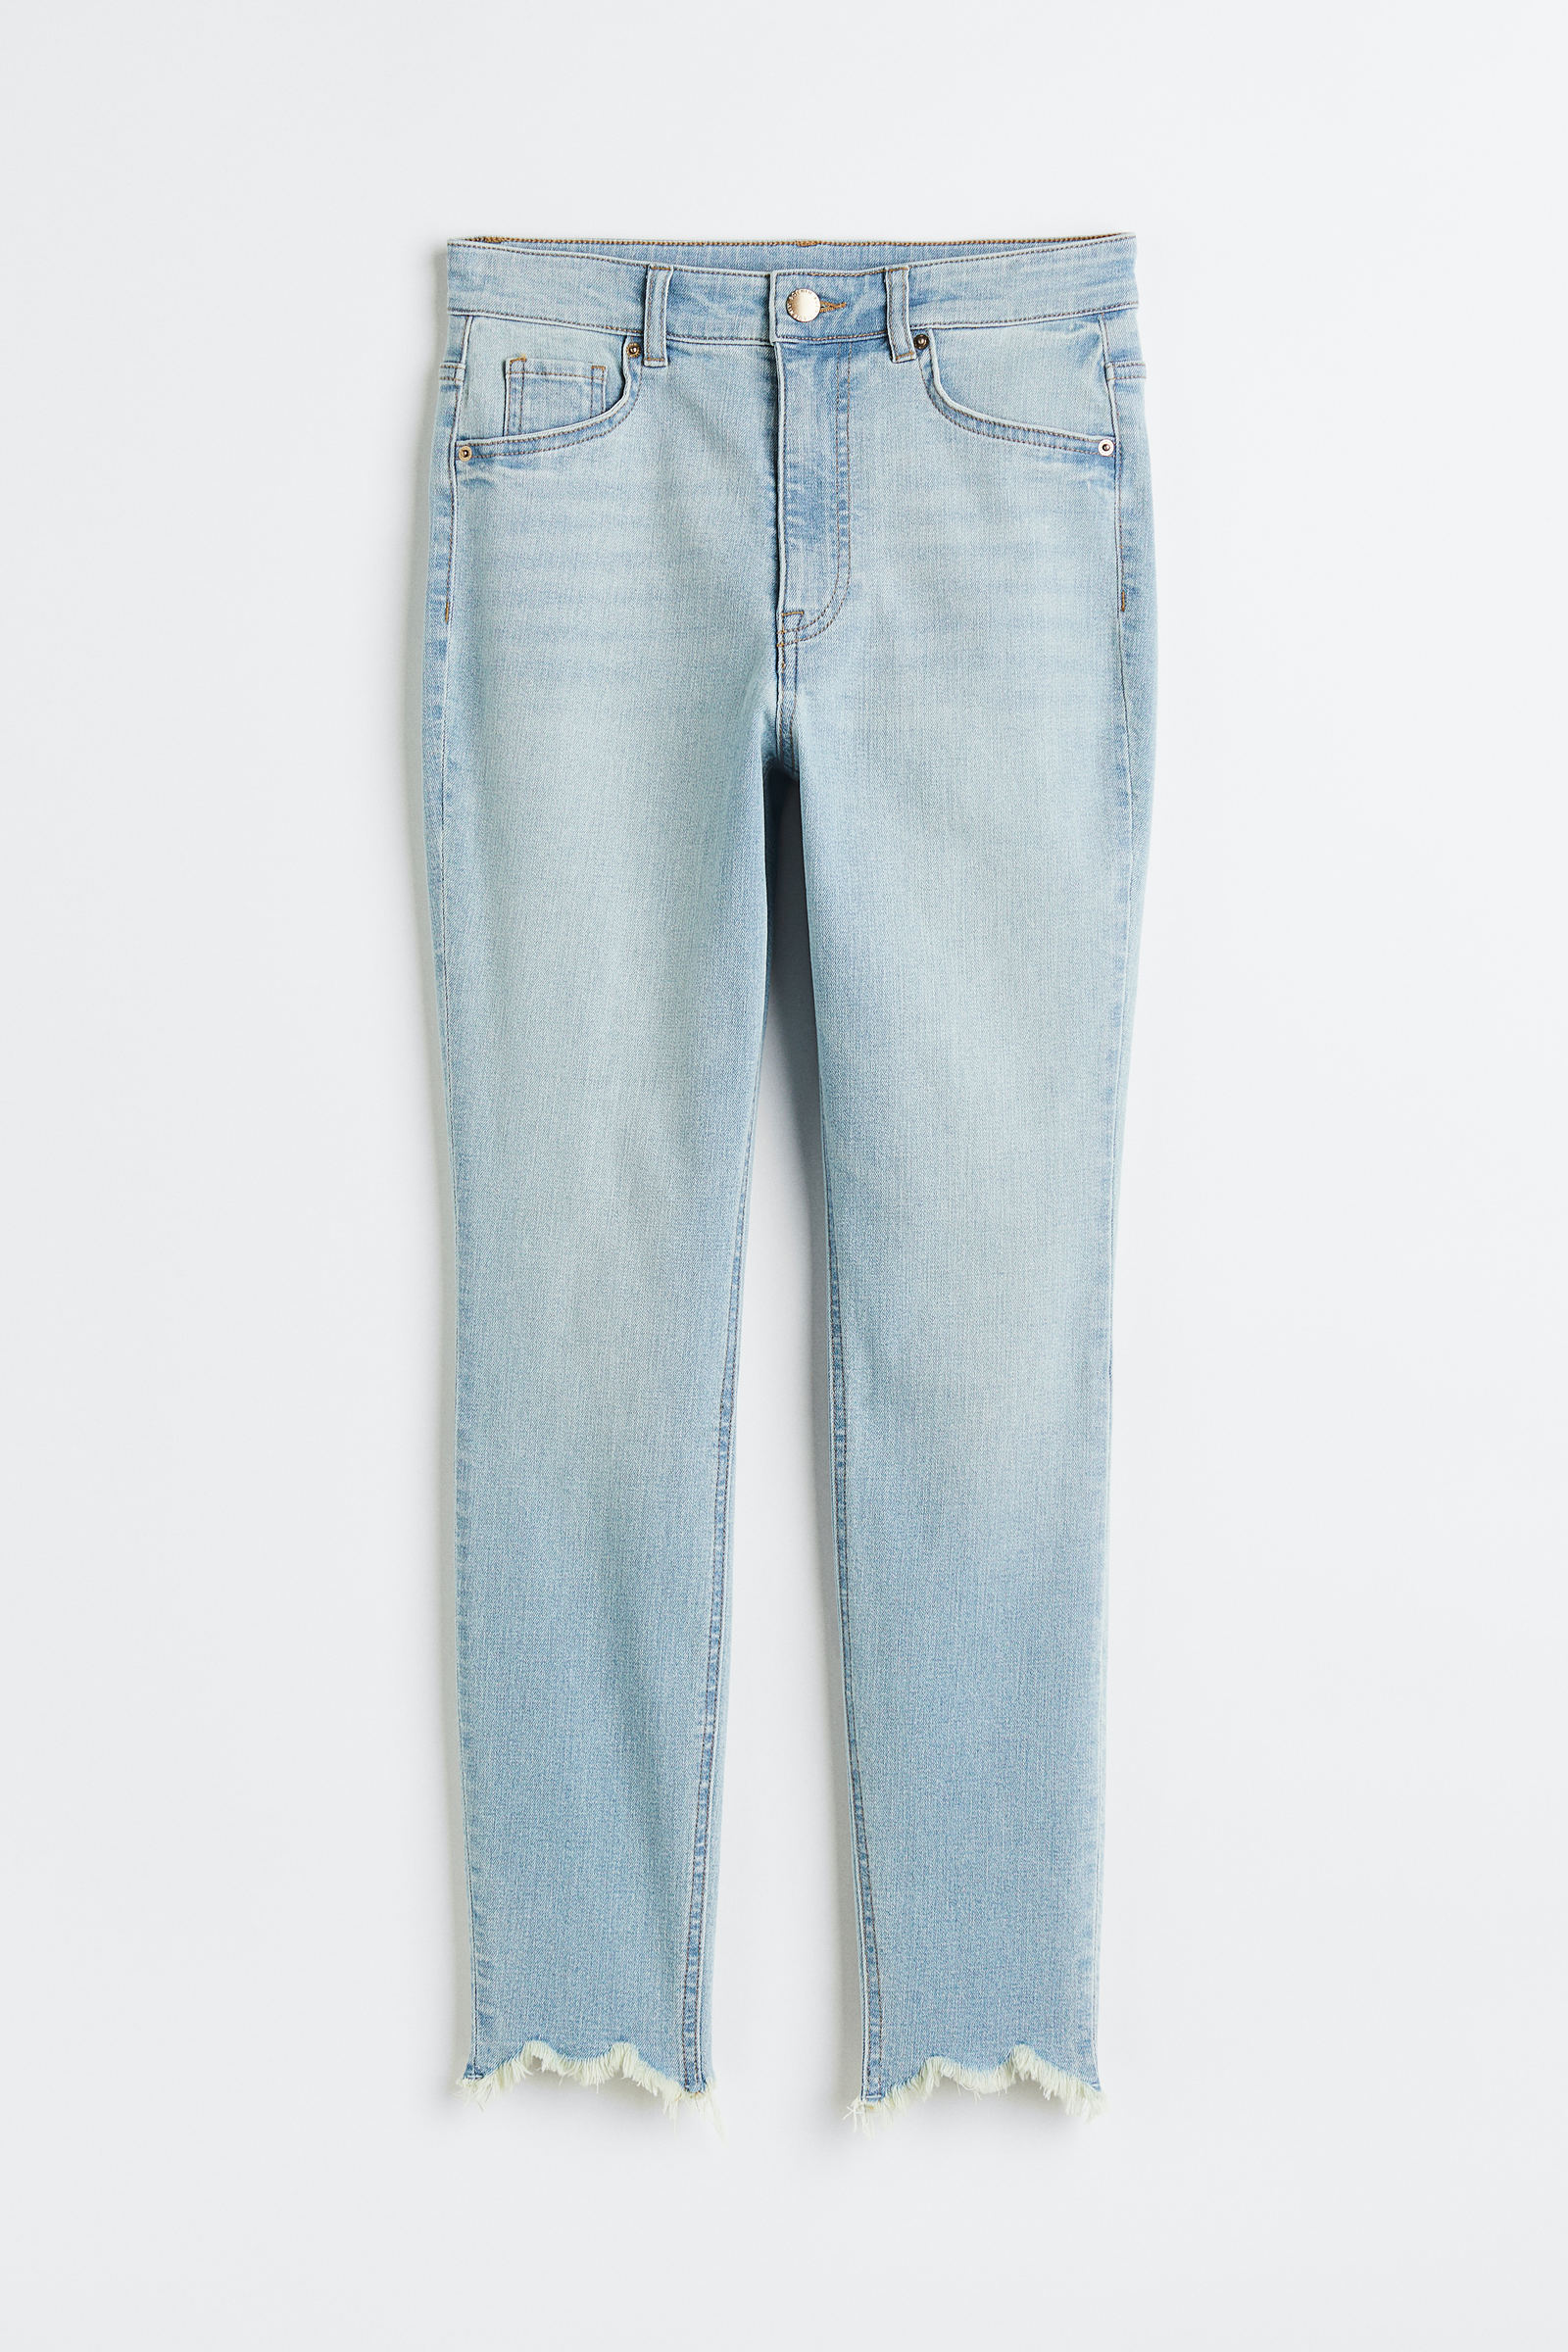 Encuentra tu estilo con los jeans de mujer - H&M CL